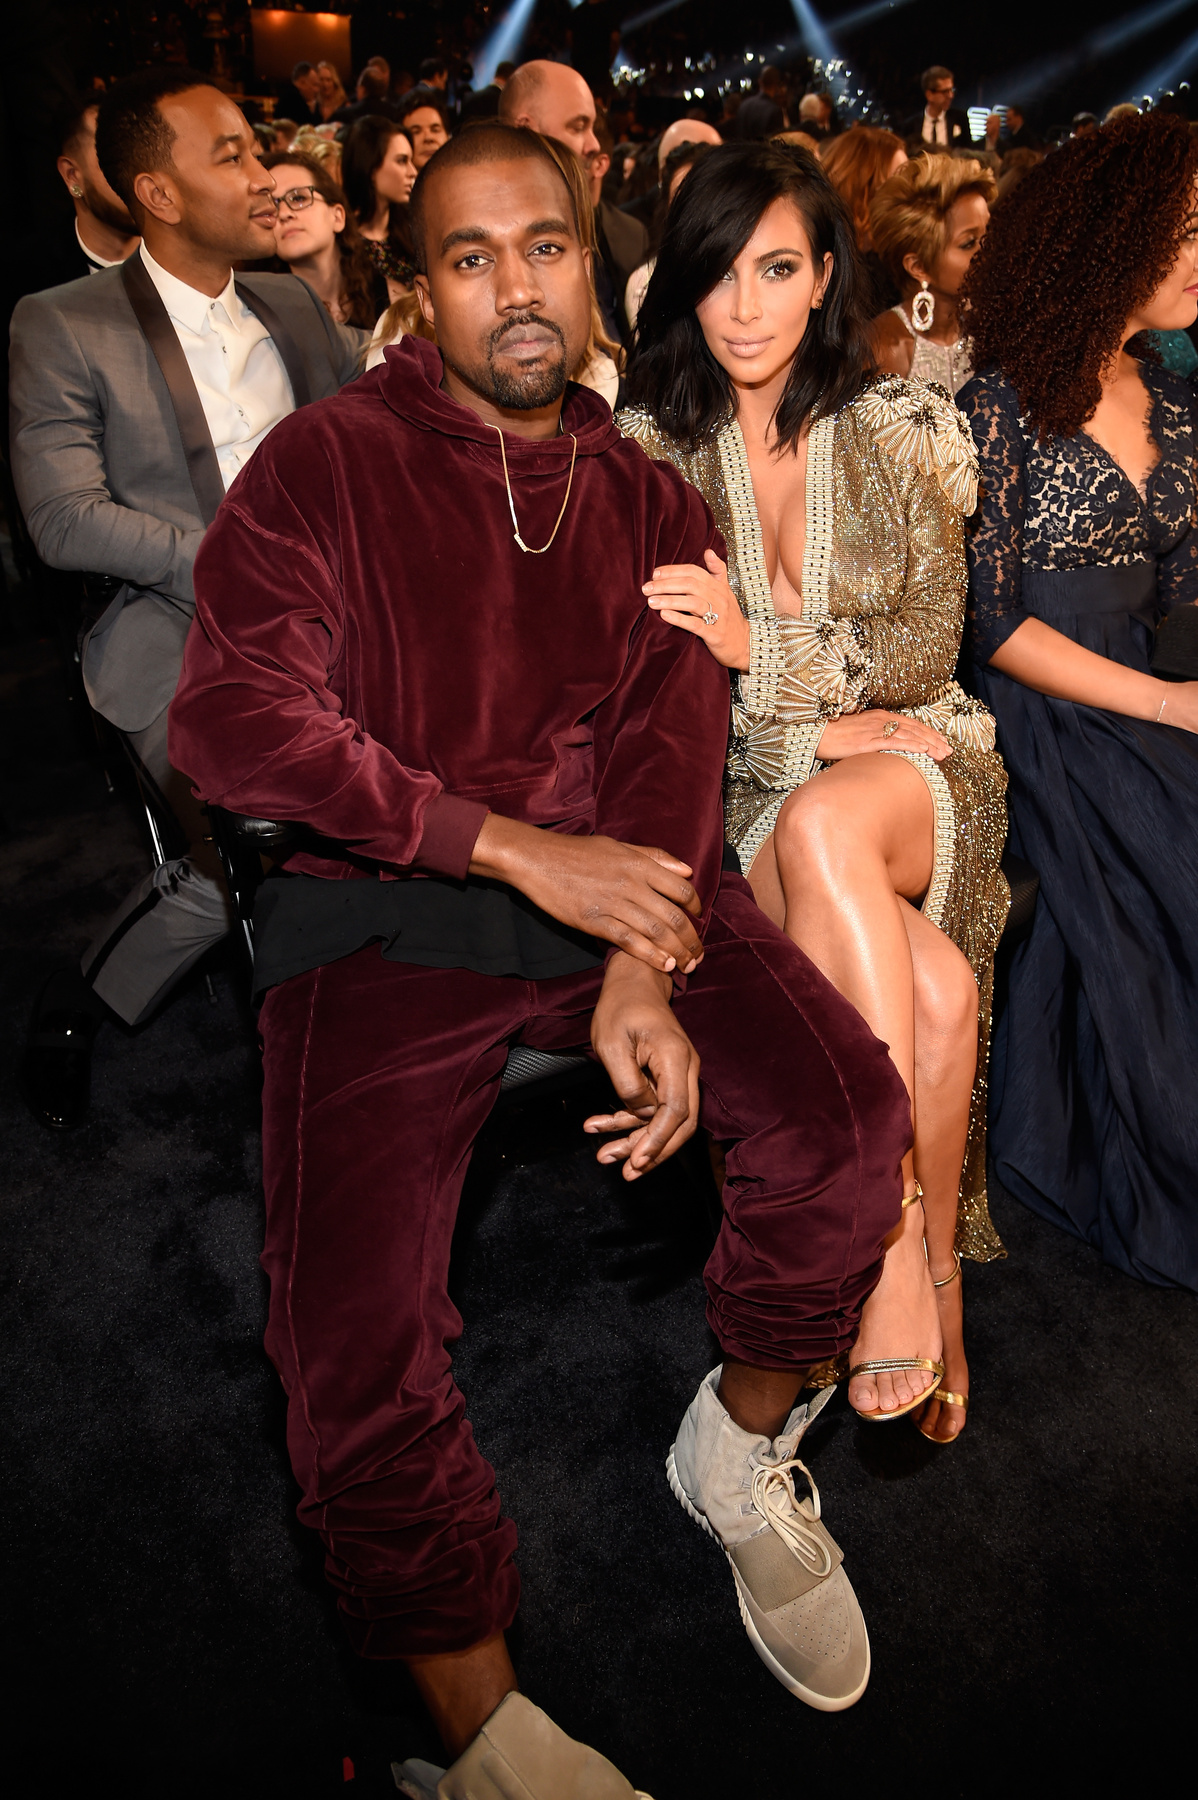 Kanye West sokak szerint annyira menő, hogy azt vesz fel, amit akar. Lehet, hogy így van, de attól még nevetséges.